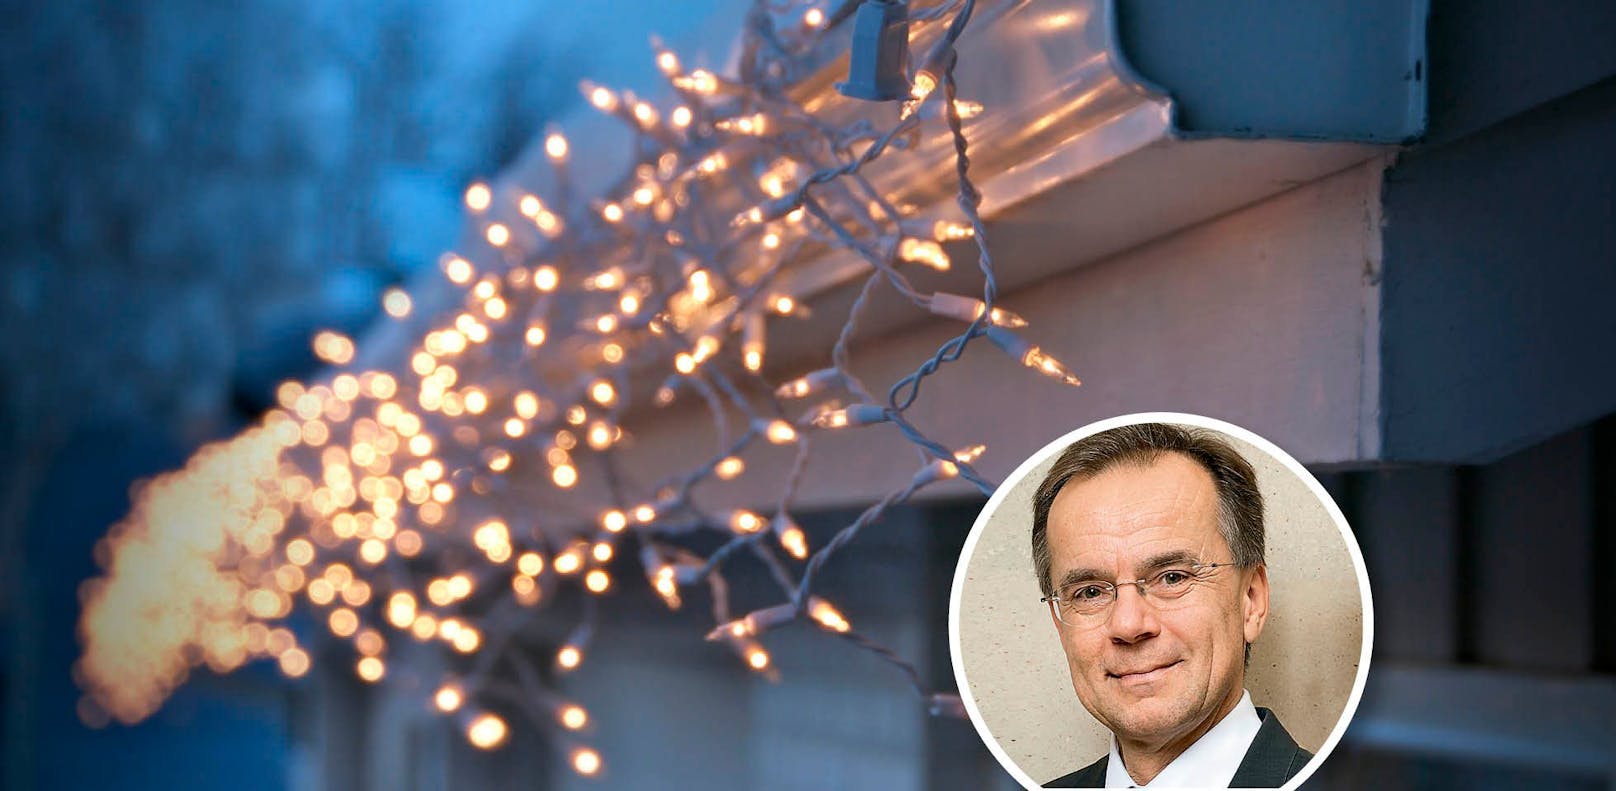 Wer heuer Lichterketten aufhängt sollte auf ein paar Tipps von Gerhard Dell vom Energiesparverband achten.